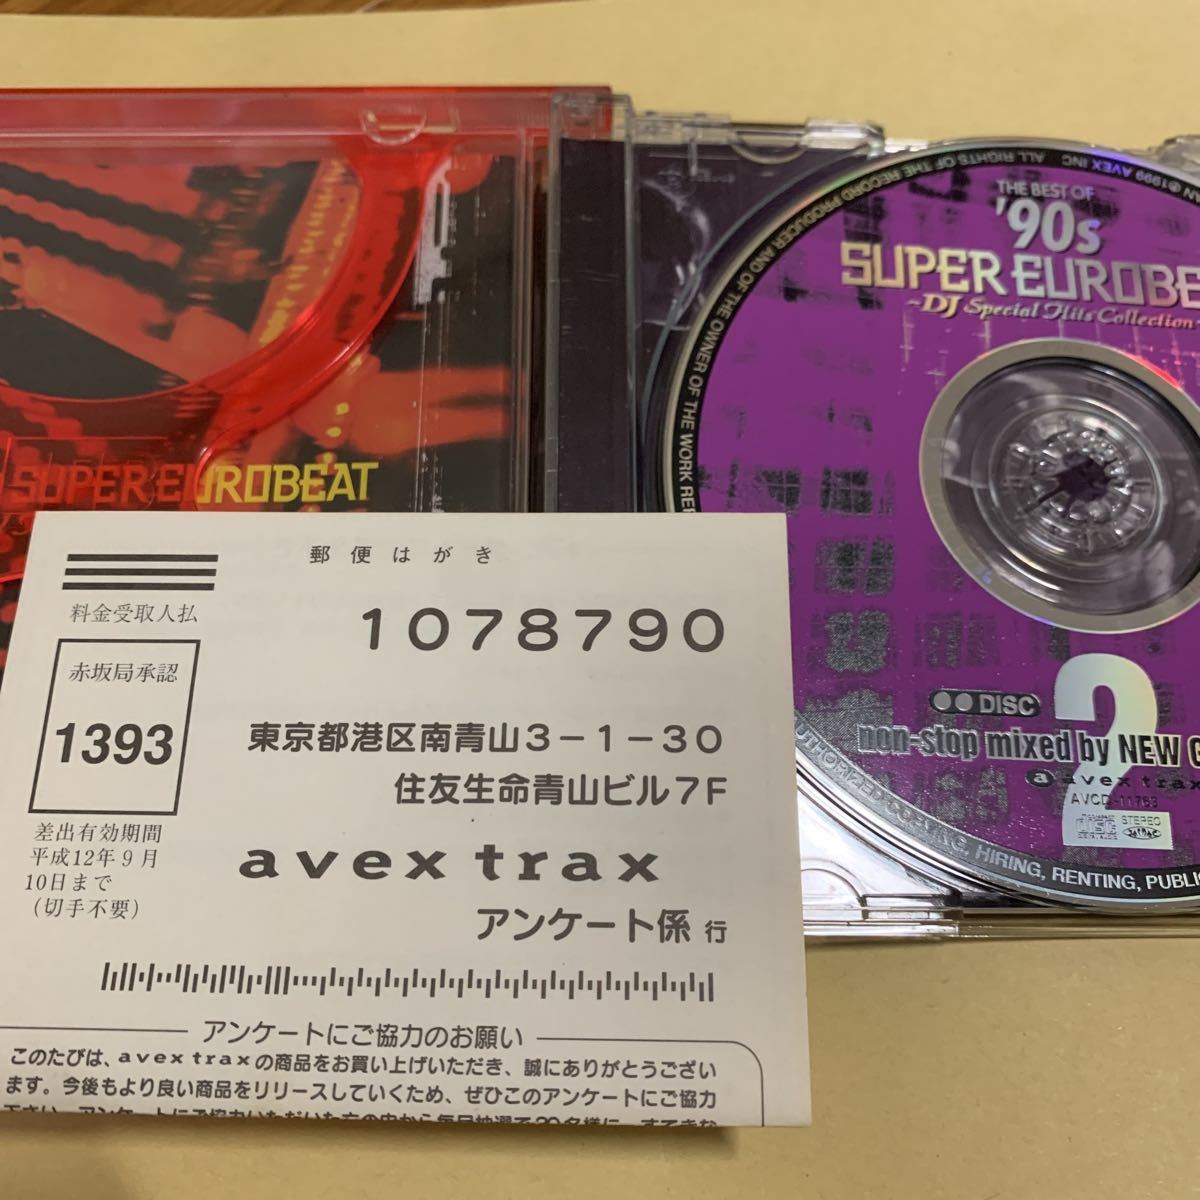 ☆帯付☆ ザ・ベスト・オブ '90s スーパー・ユーロビート~DJ・スペシャル・ヒッツ・コレクション　2CD_画像4